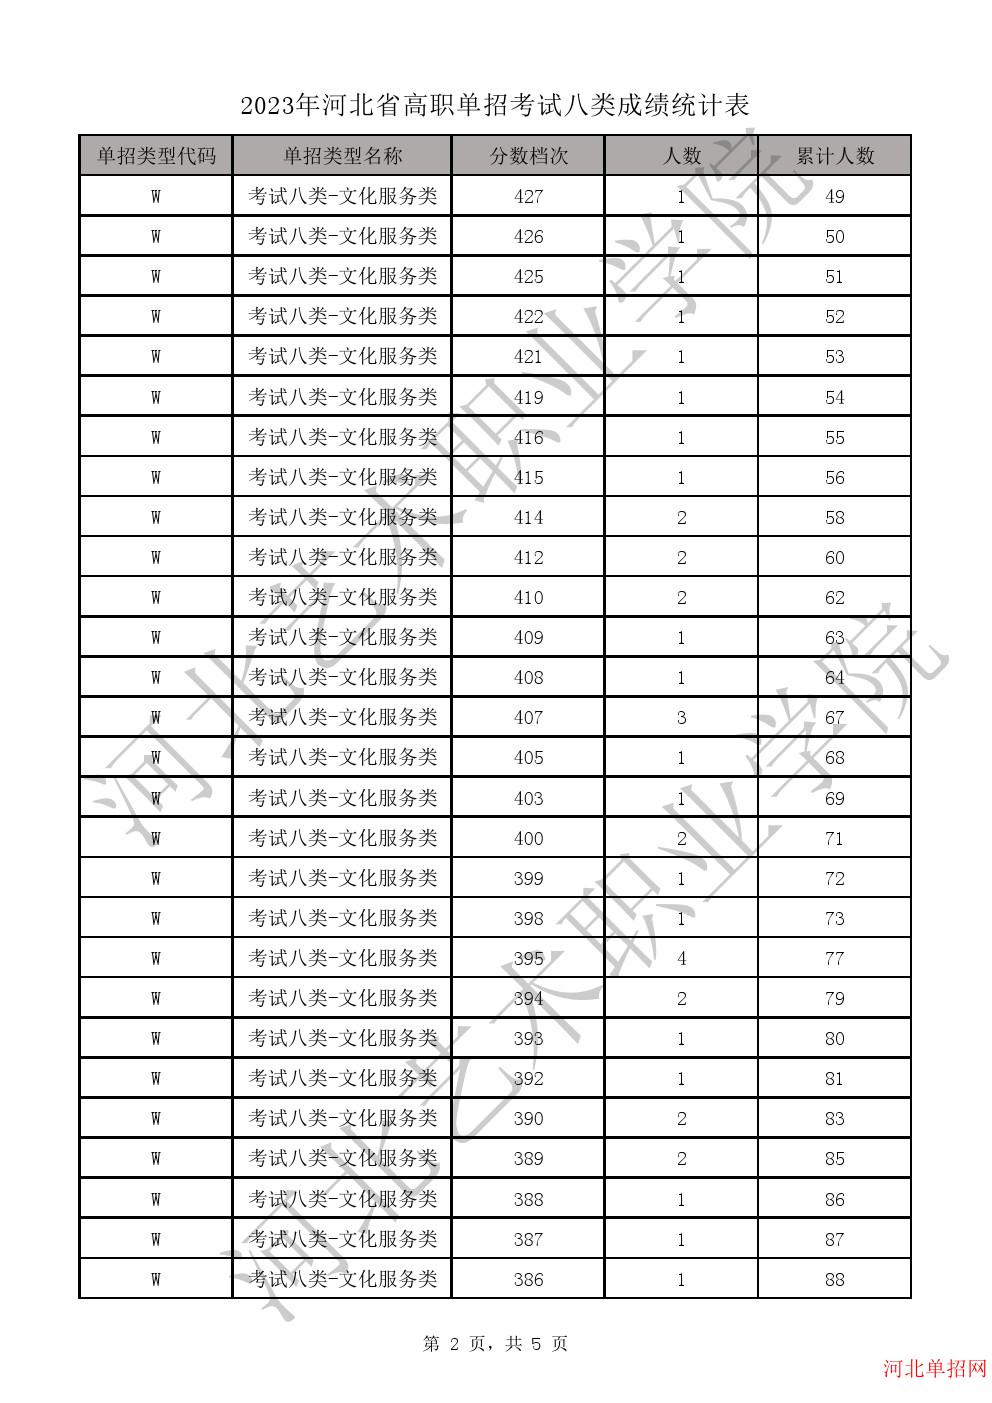 2023年河北省高职单招考试八类一分一档表-W学问服务类一分一档表 图2